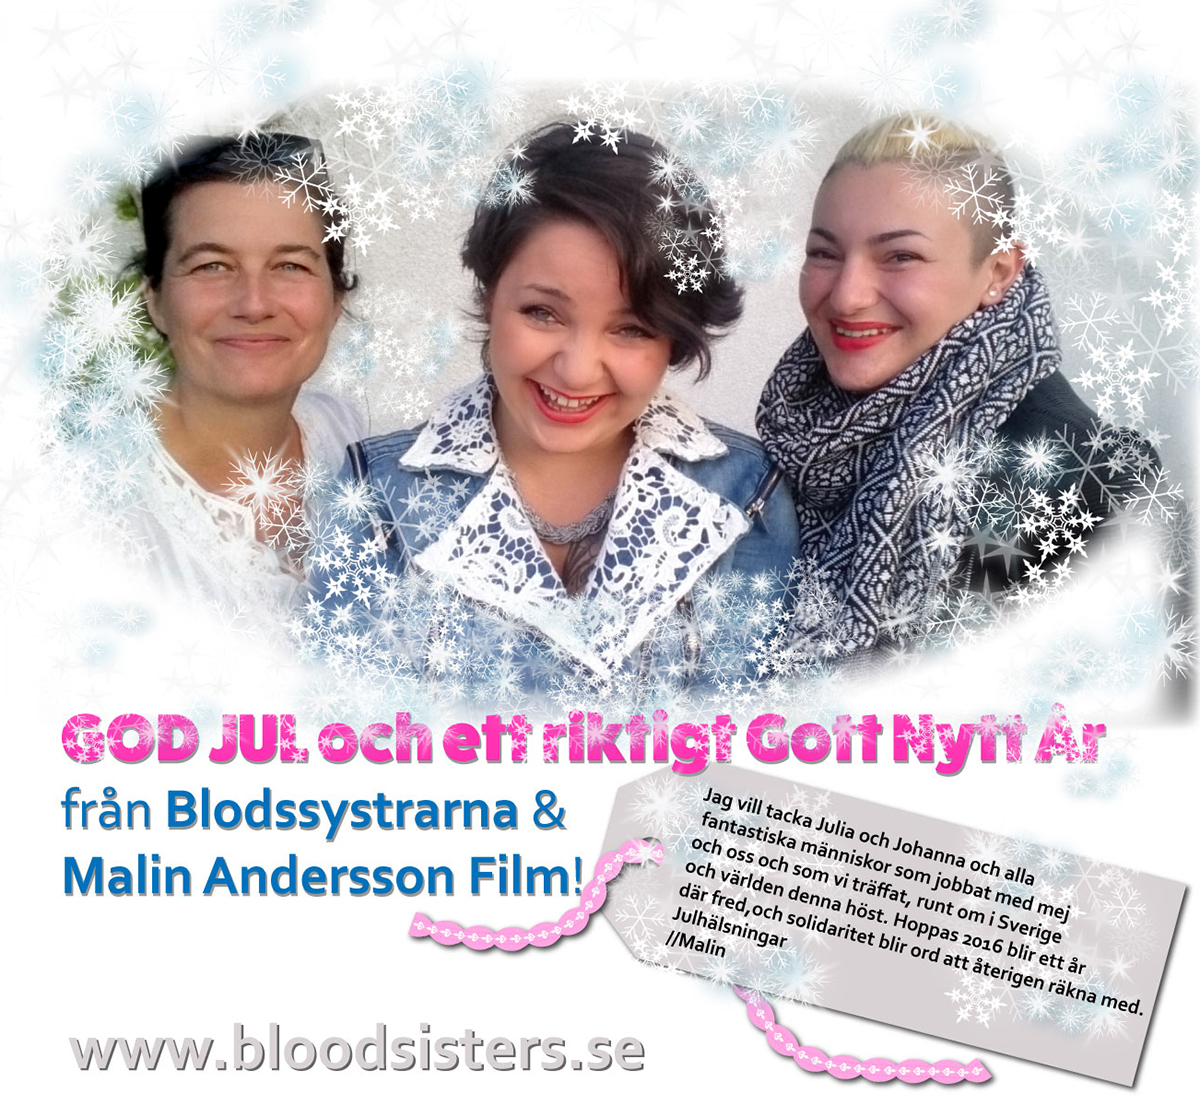  GOD JUL och ett riktigt Gott Nytt År från Blodssystrarna och Malin Andersson Film!